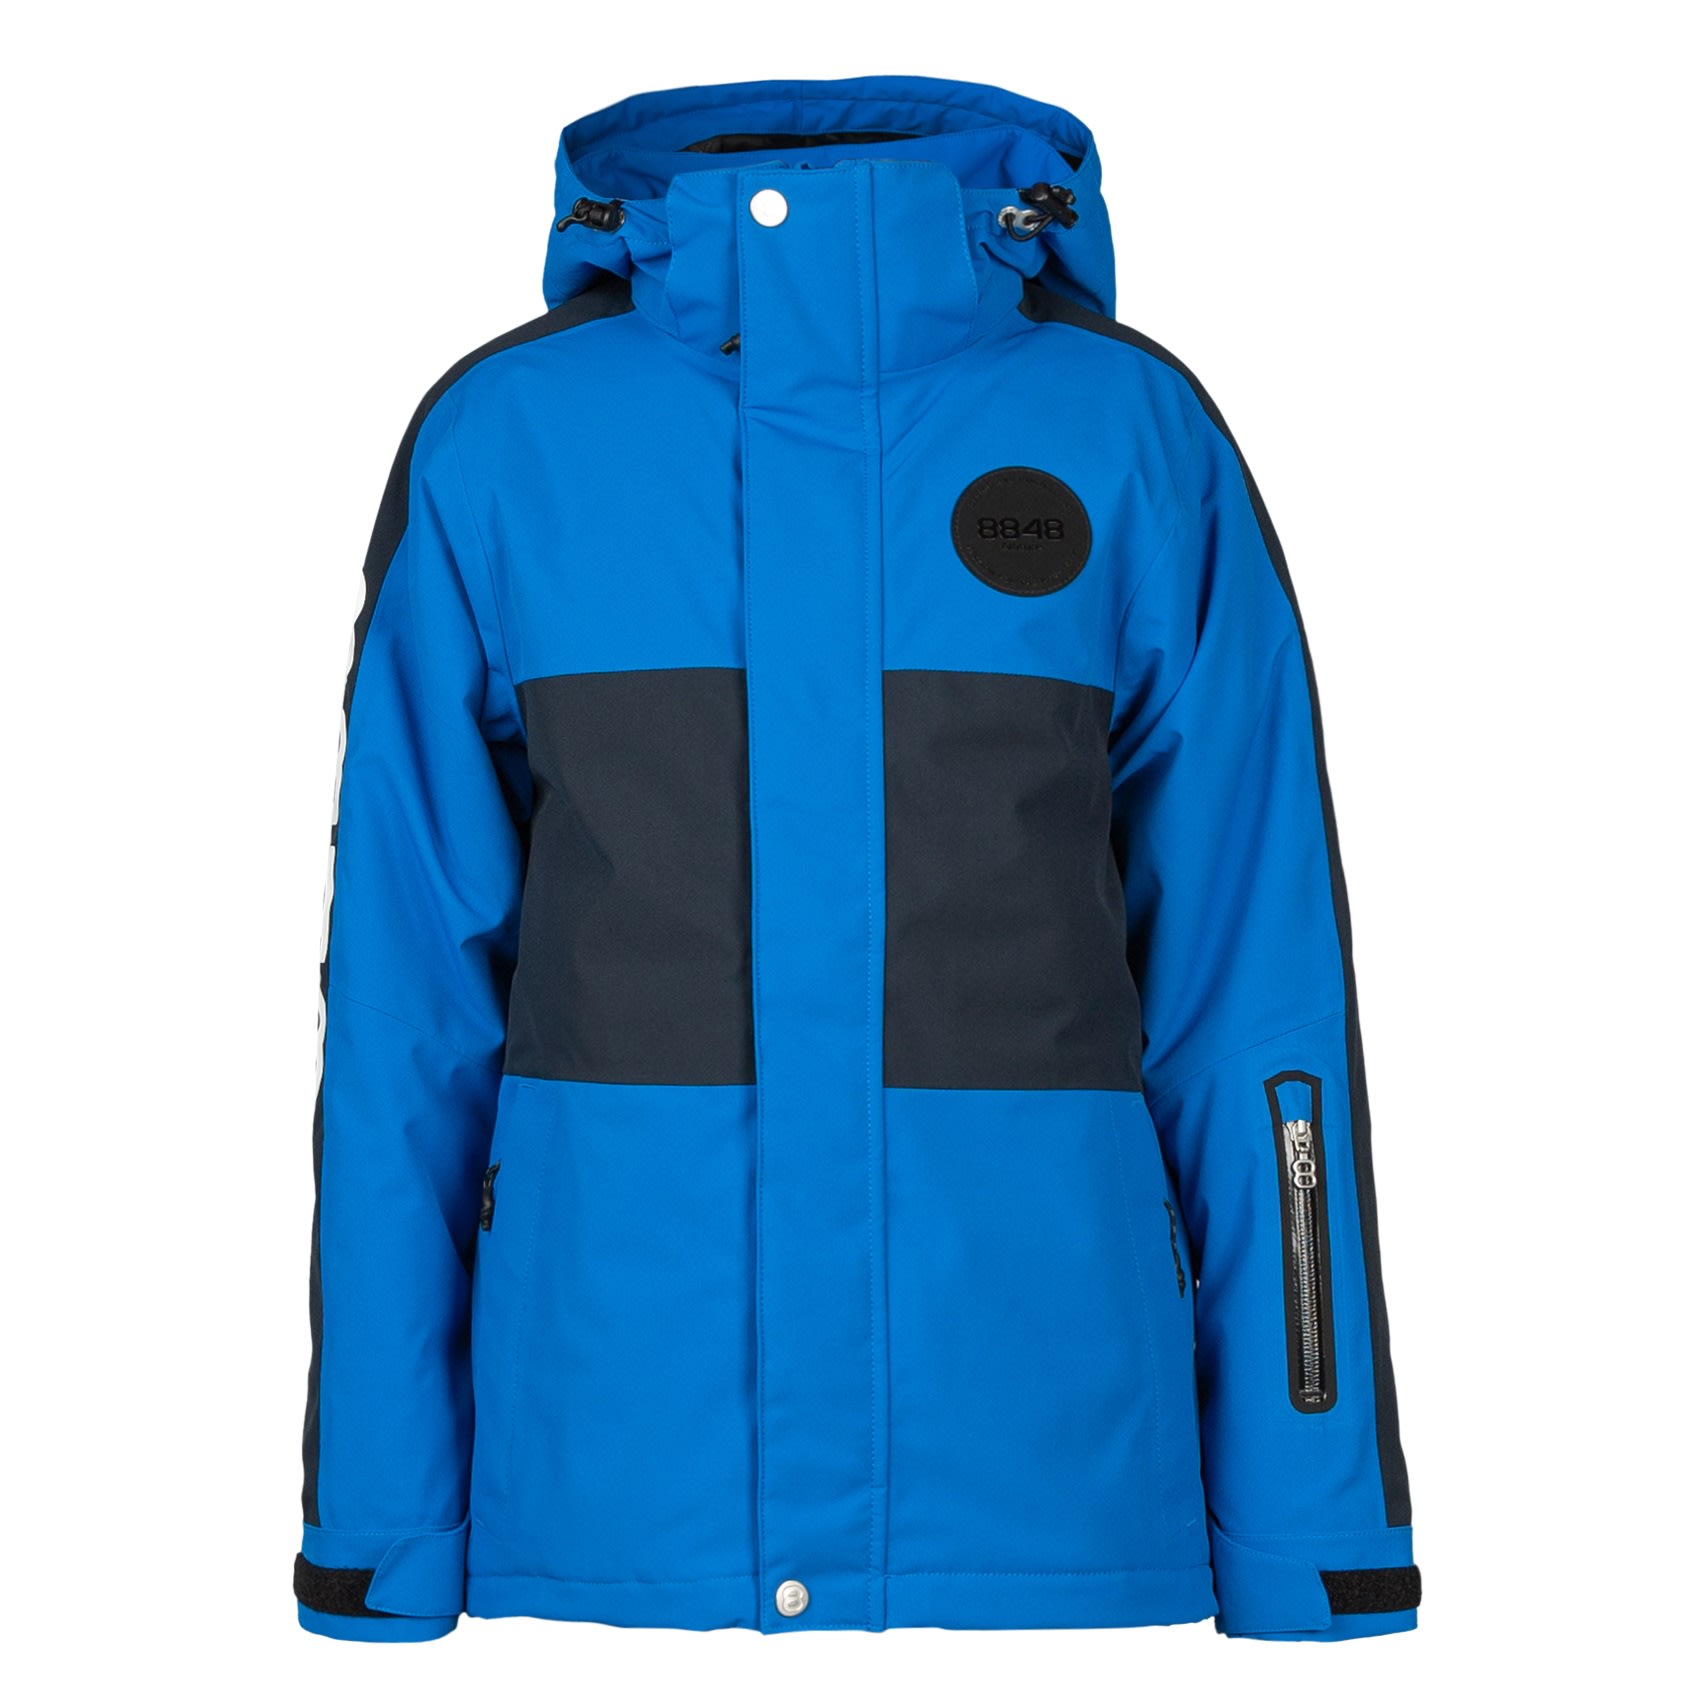 Køb Altitude Junior's Kingston Jacket fra Outnorth